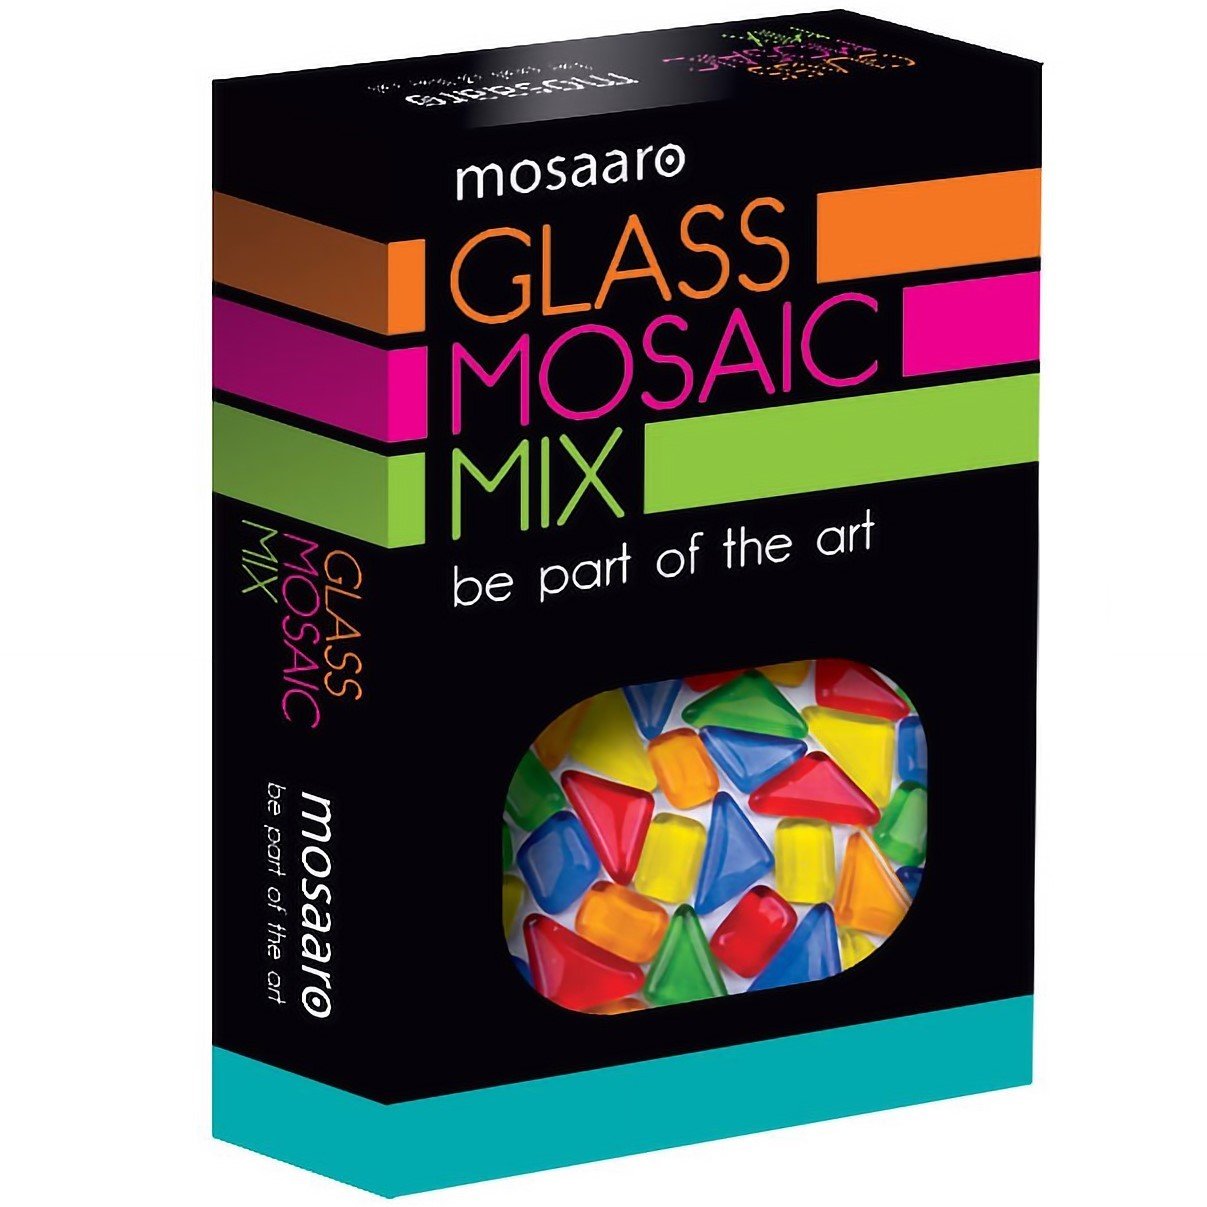 Стеклянная мозаика Mosaaro Mosaic mix: bluе, green, yellow, red, orange (MA5003) - фото 1